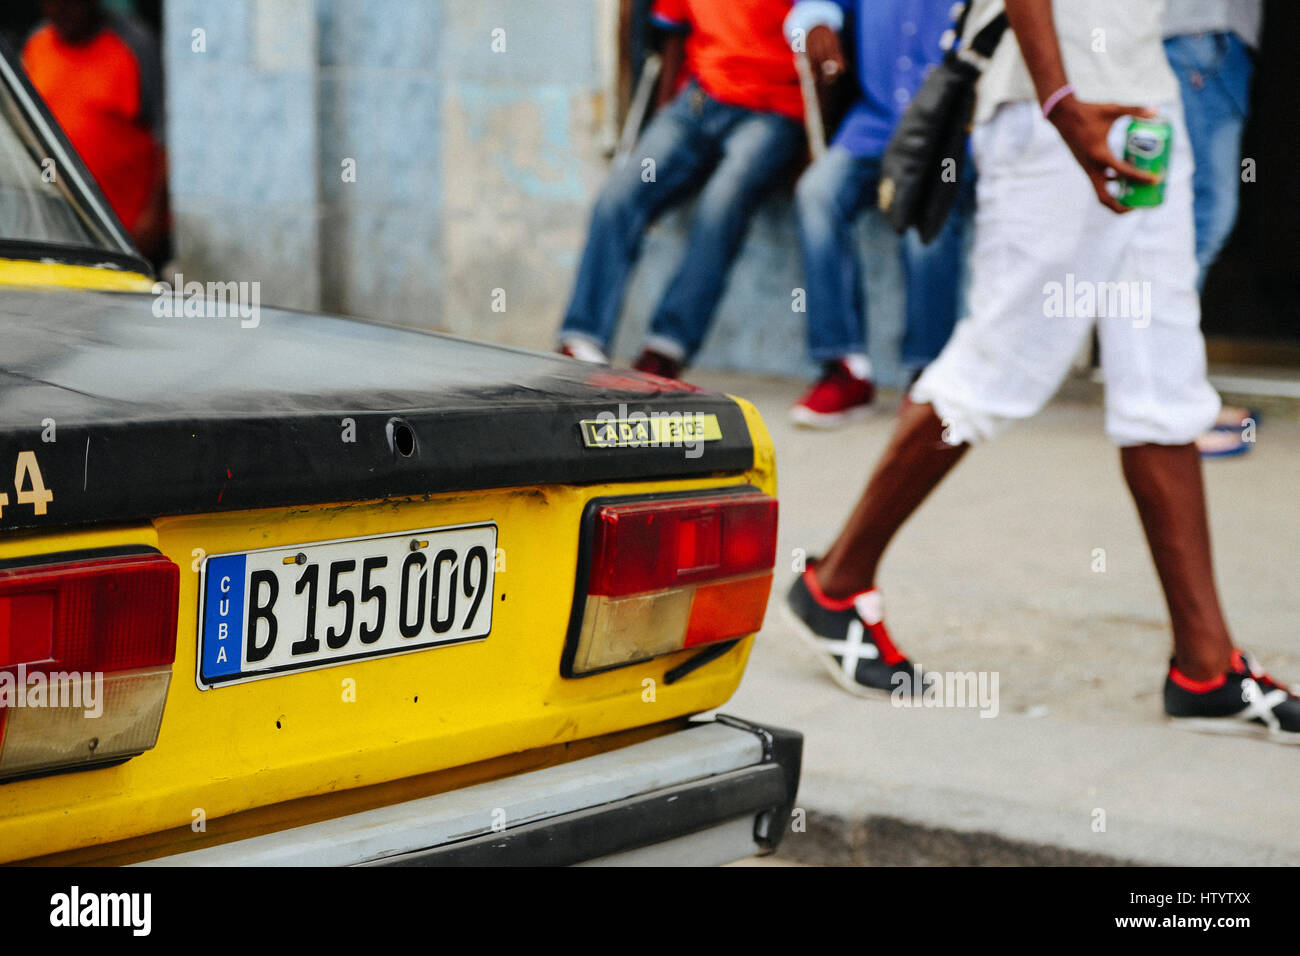 Die Rückseite eines amtlichen gelben Lada Taxi in Havanna, Kuba Stockfoto